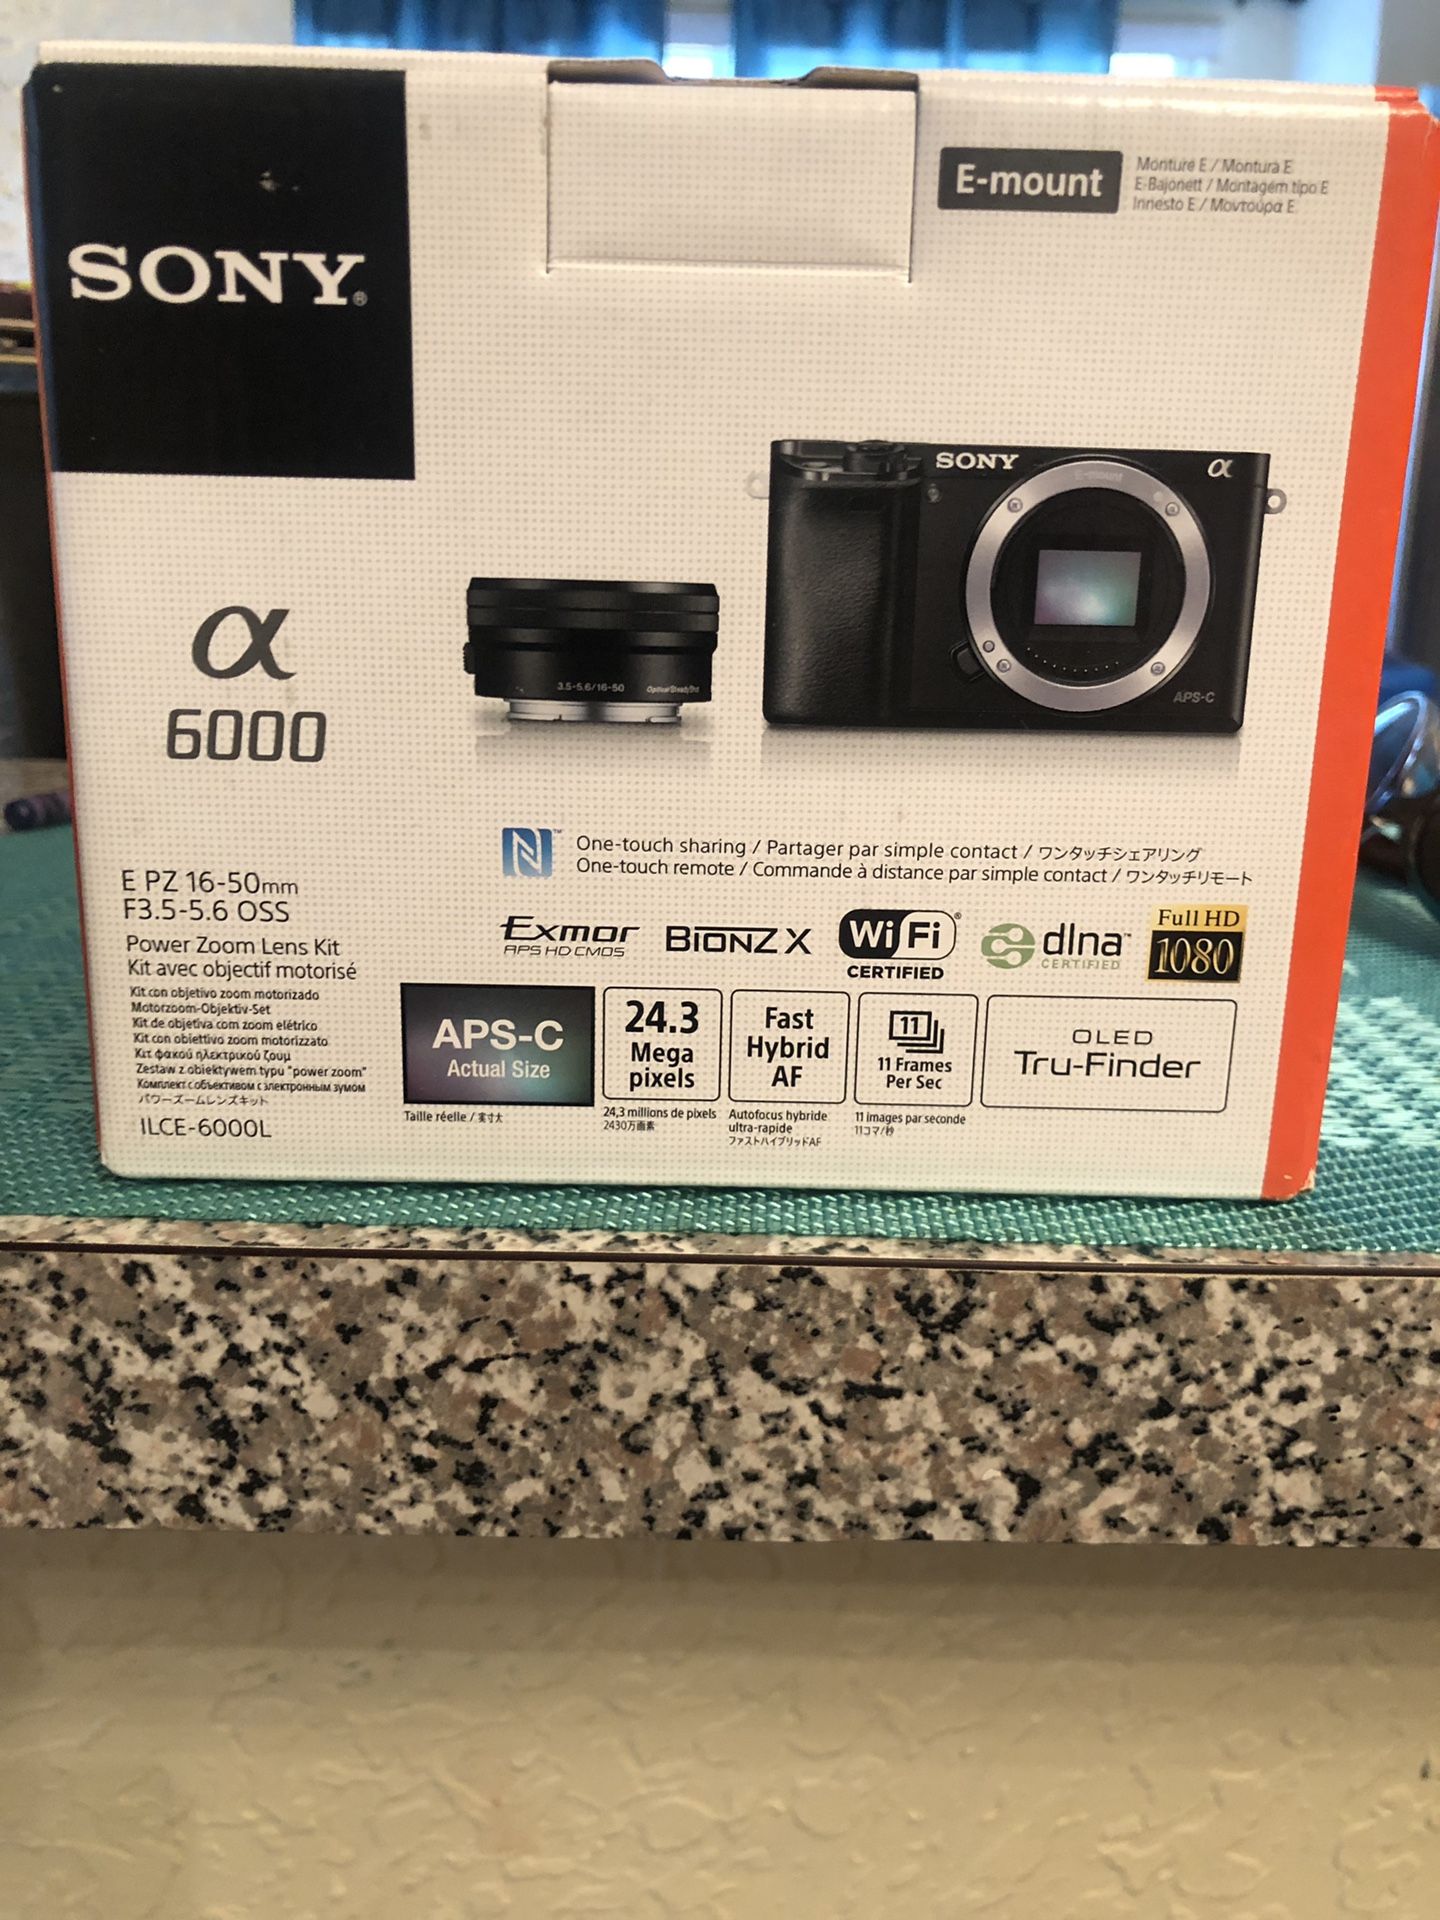 Brand new sony a6000 camera